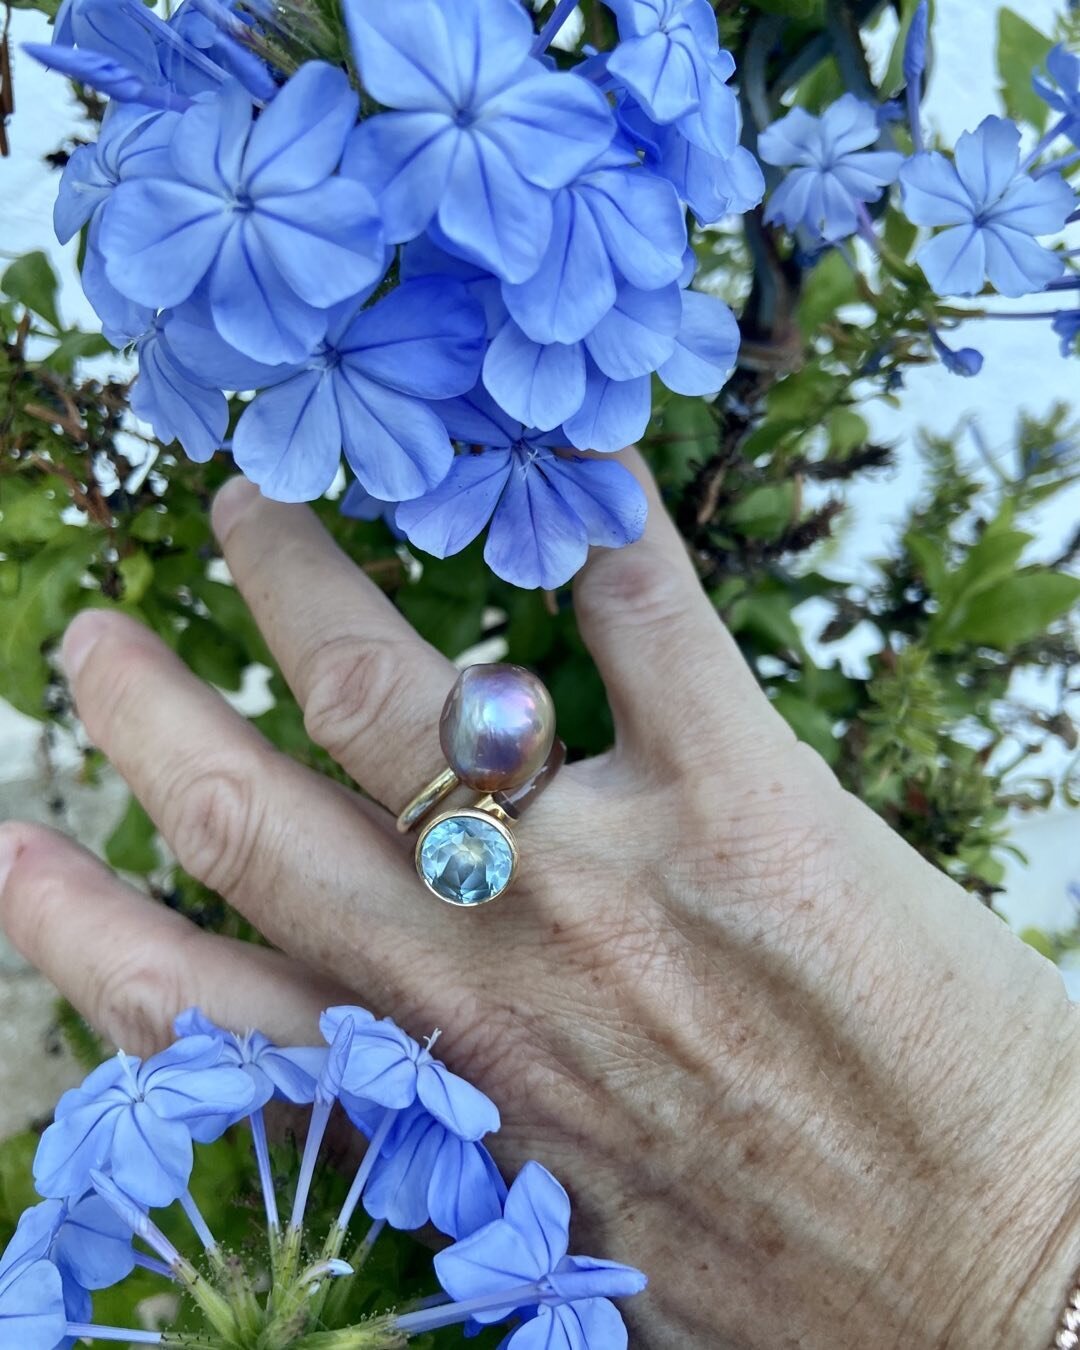 Im Sommer kann man alles tragen.
Der zarte Schimmer der Perle trifft auf blauen Topas

#summertime 
#perlenschmuck 
#blauertopas 
#mixandmatchjewelry